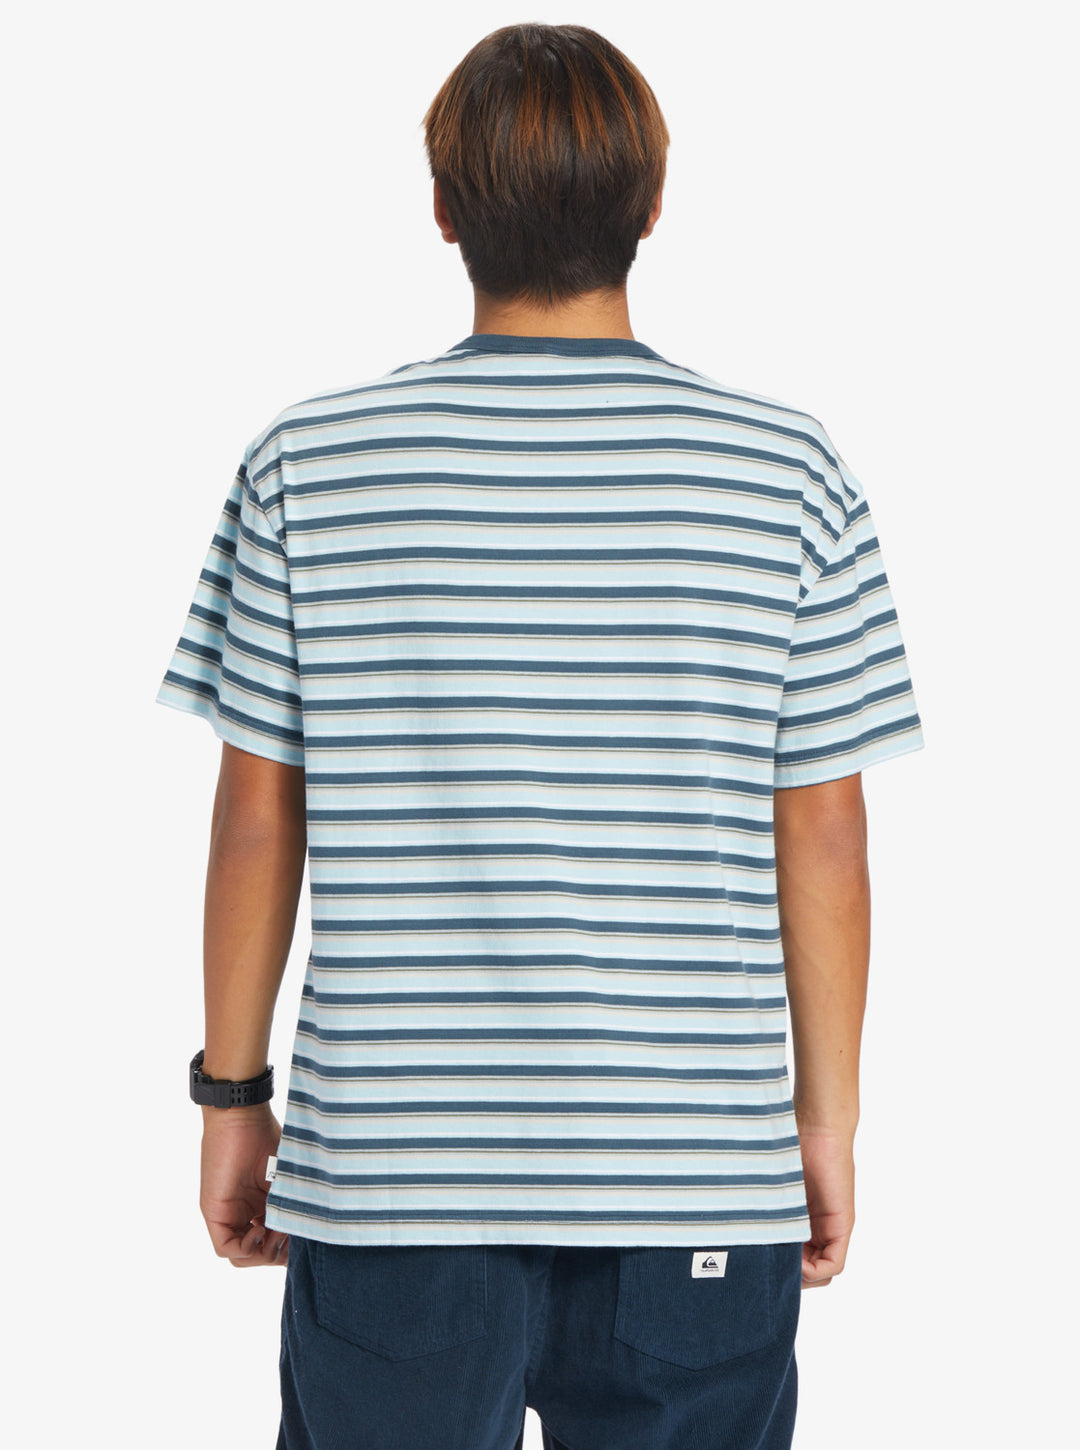 Quiksilver Joey Stripe T-Shirt - Joey Celestial Stripe - Sun Diego Boardshop